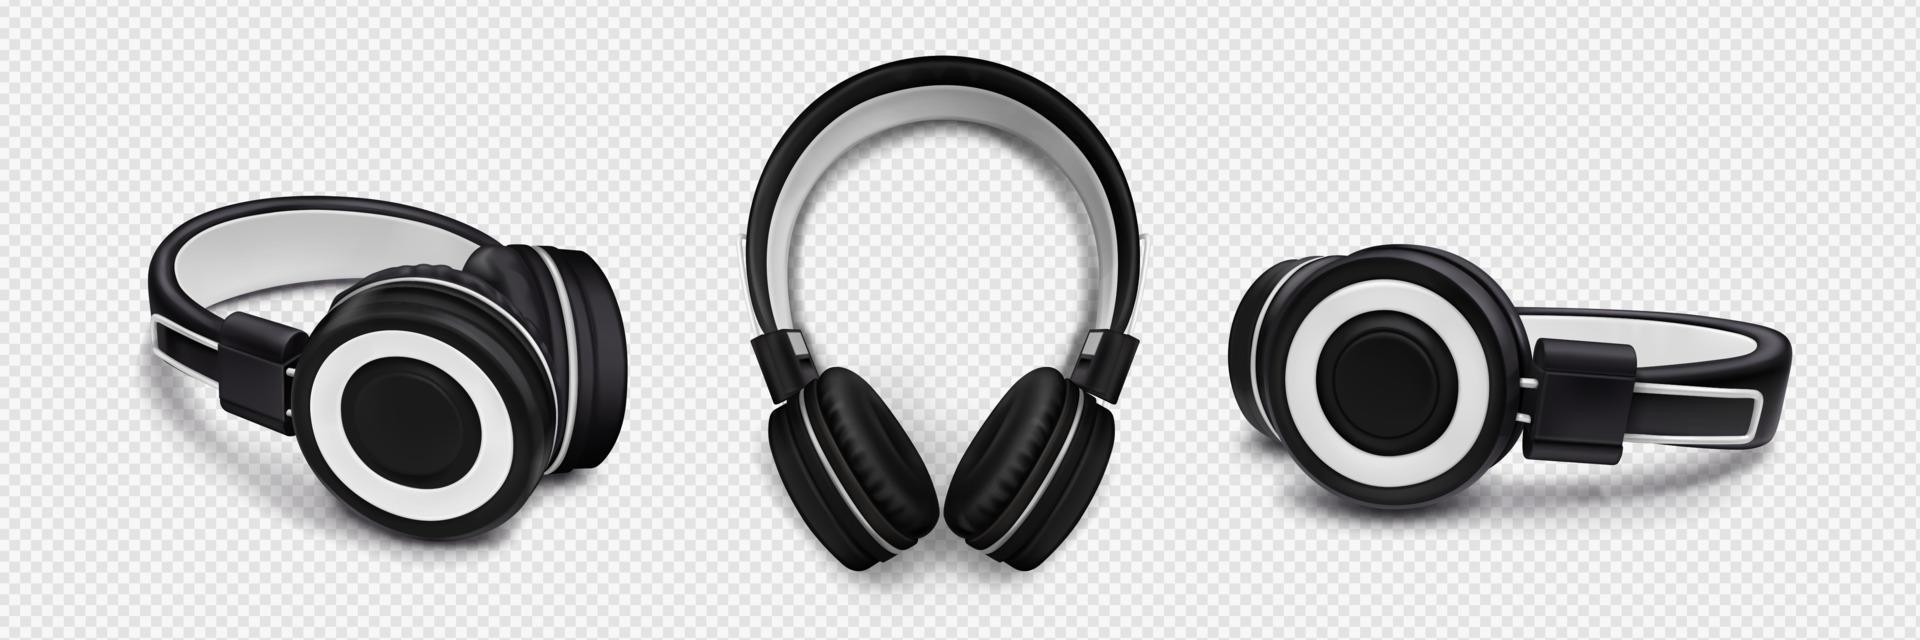 auriculares para escuchar música, sonido estéreo, audio vector